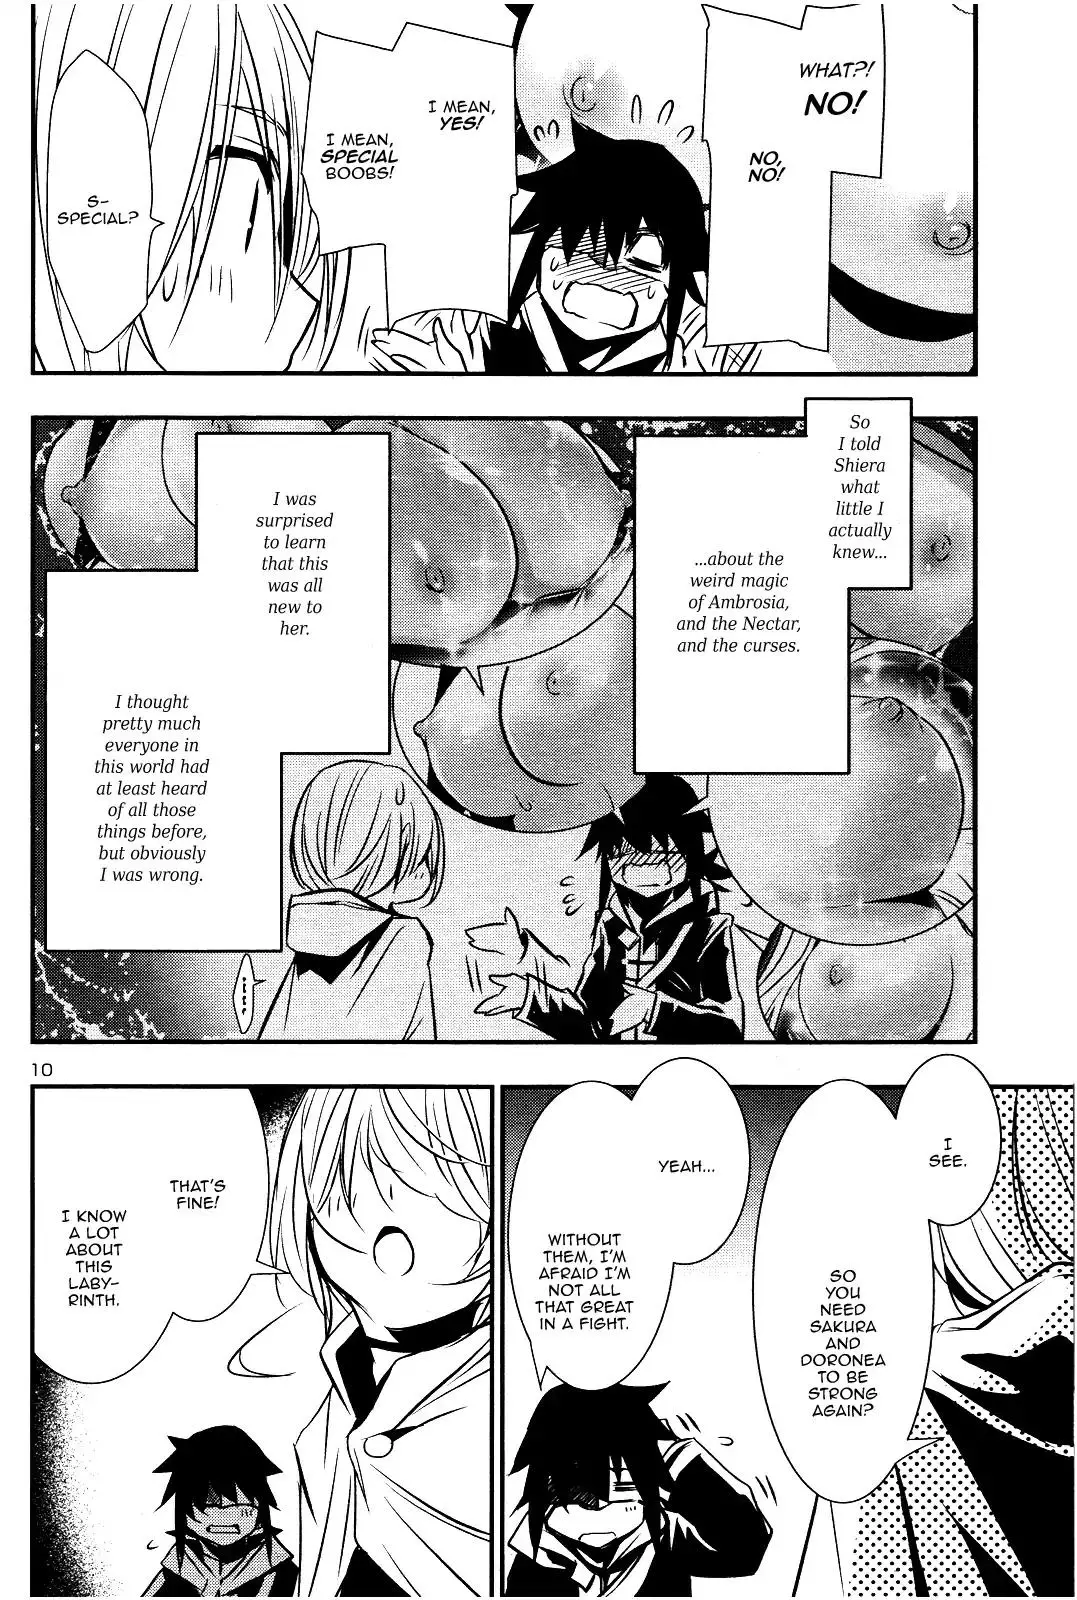 Shinju no Nectar - 17 page 8